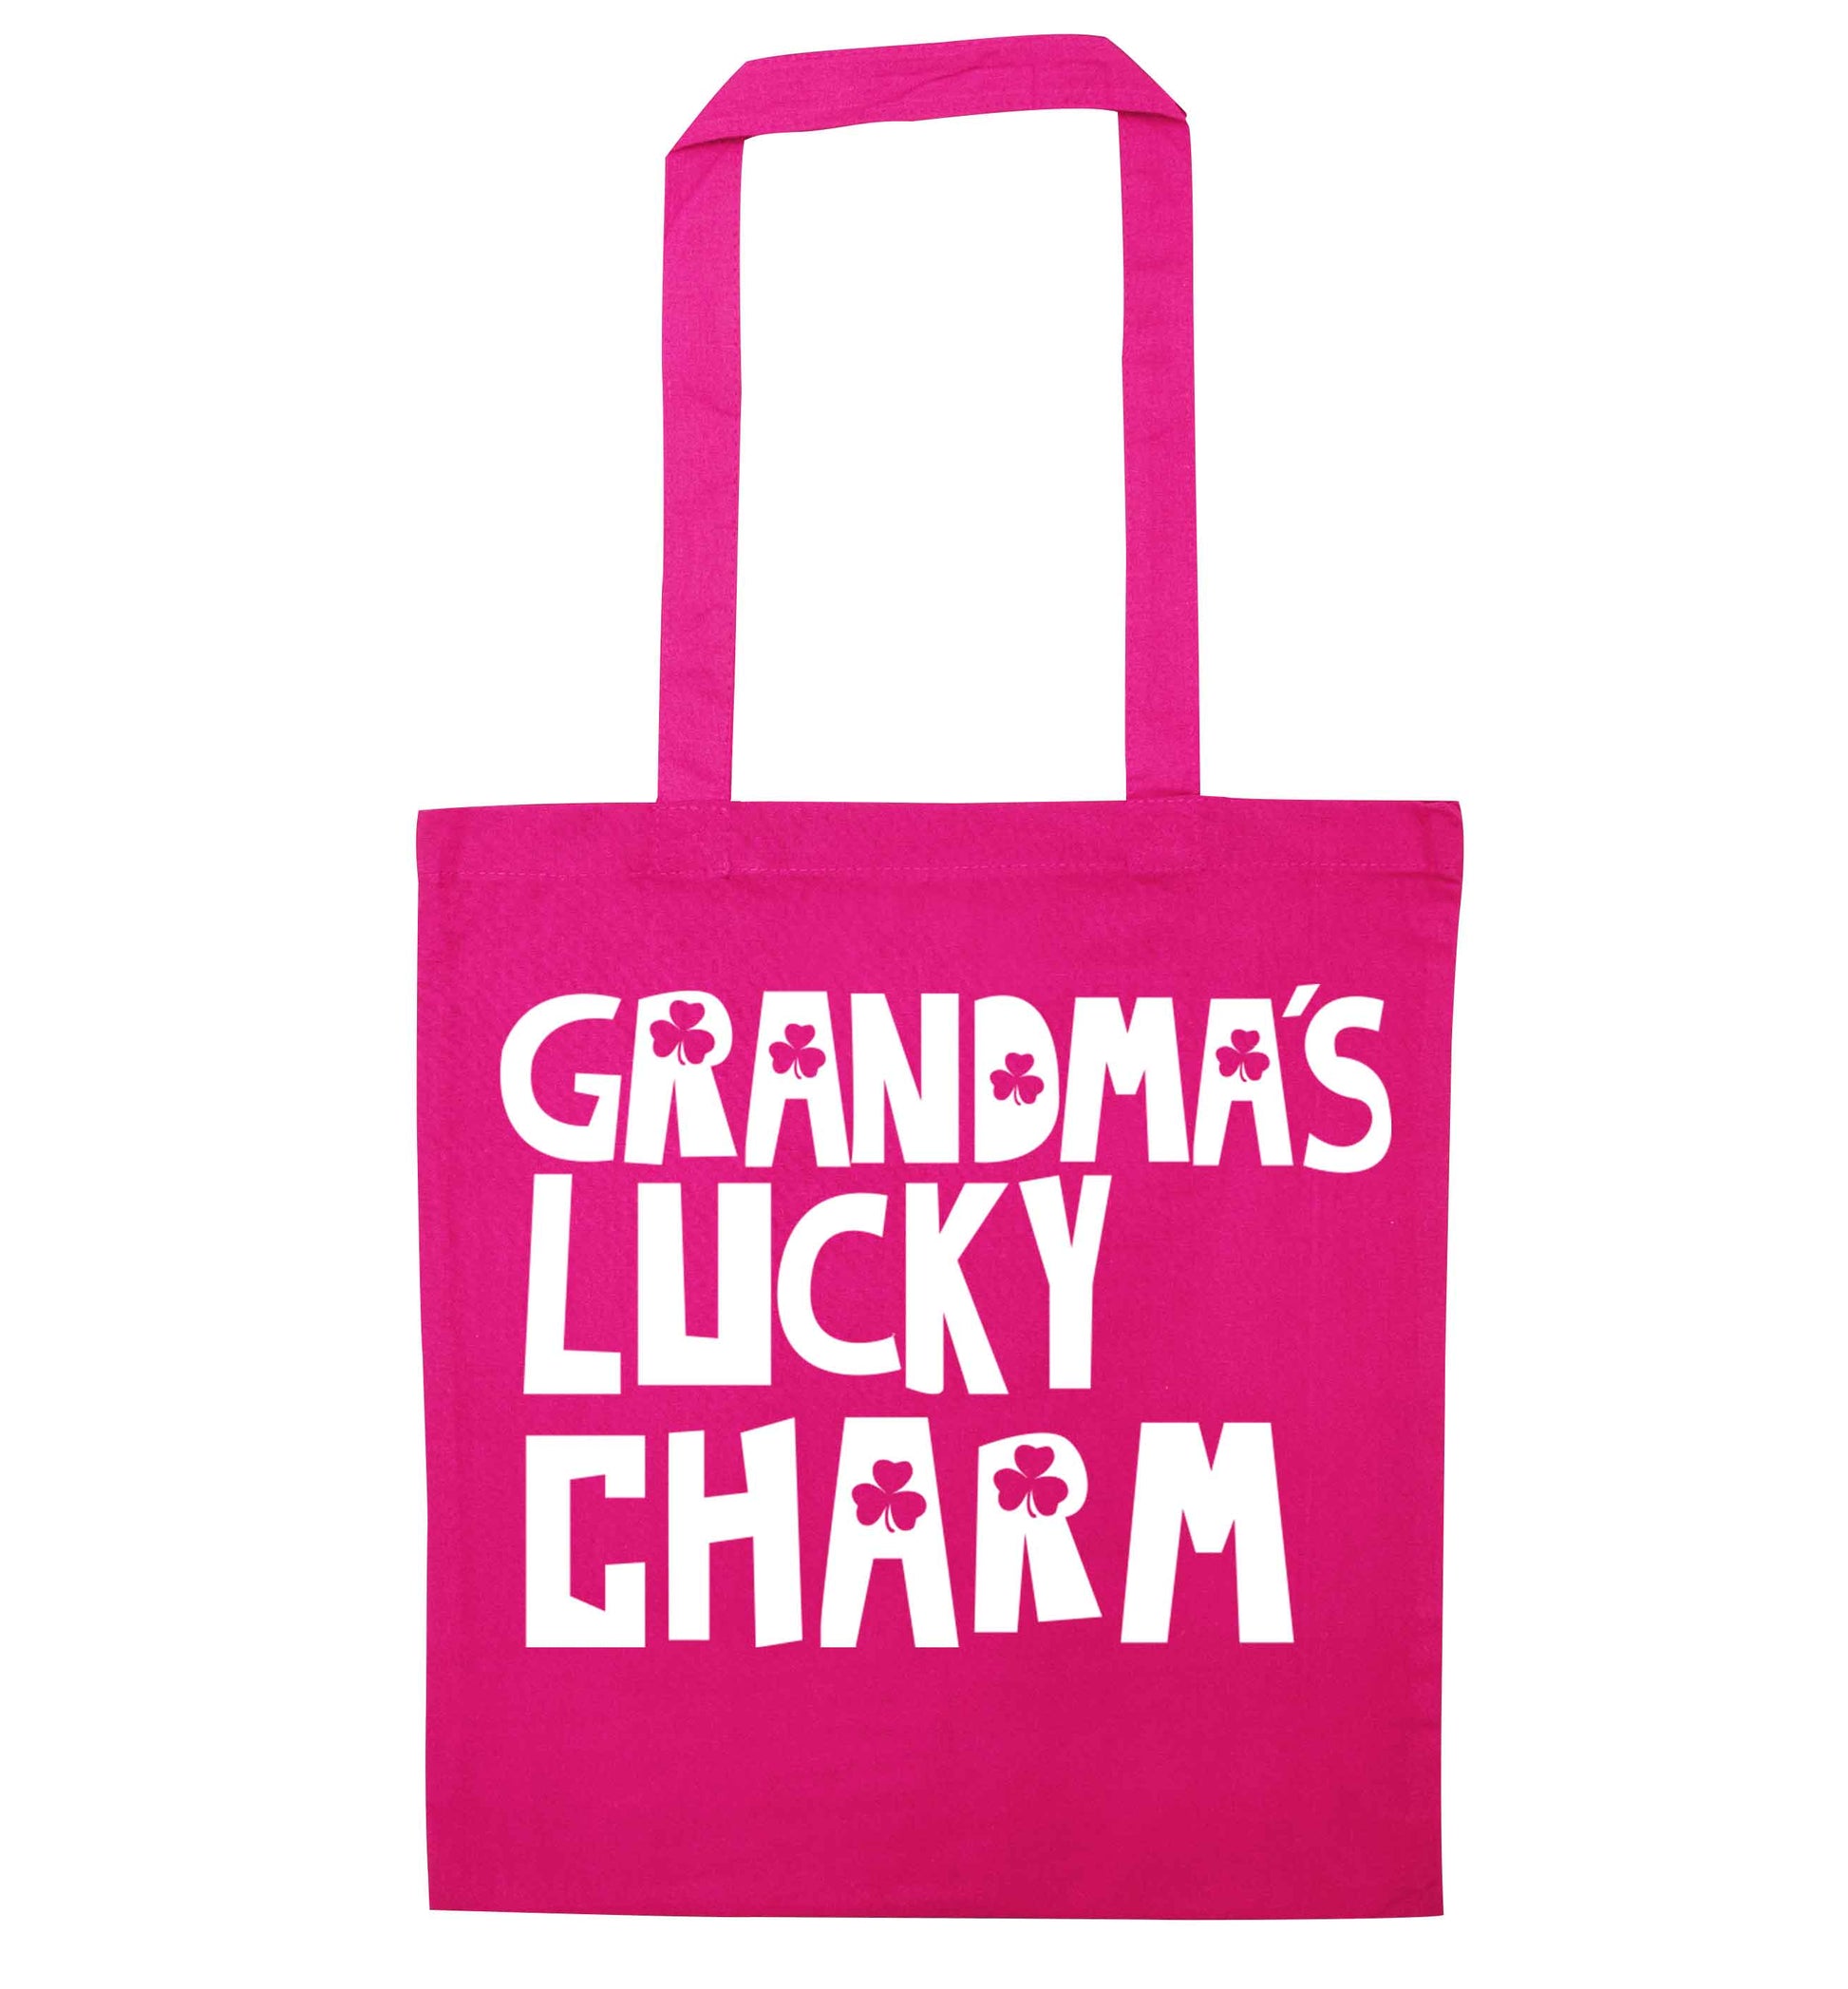 Grandma's lucky charm pink tote bag